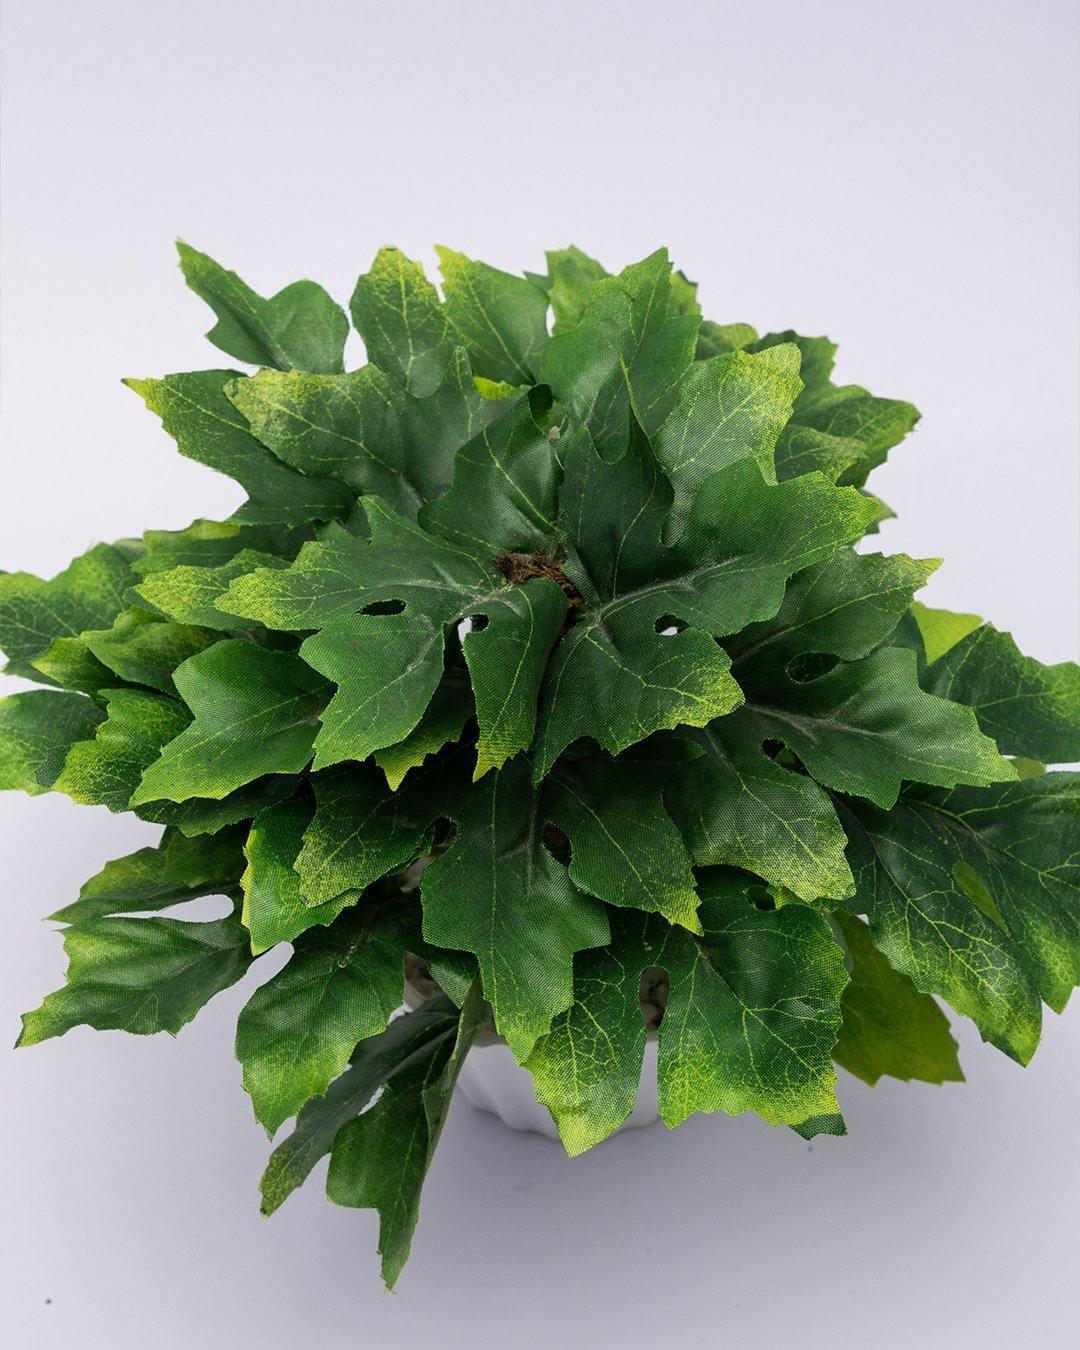 Artificial Plant, Mini Canadian & Mini Ficus Arrangement with White Pot, Green, Plastic Plant - MARKET 99